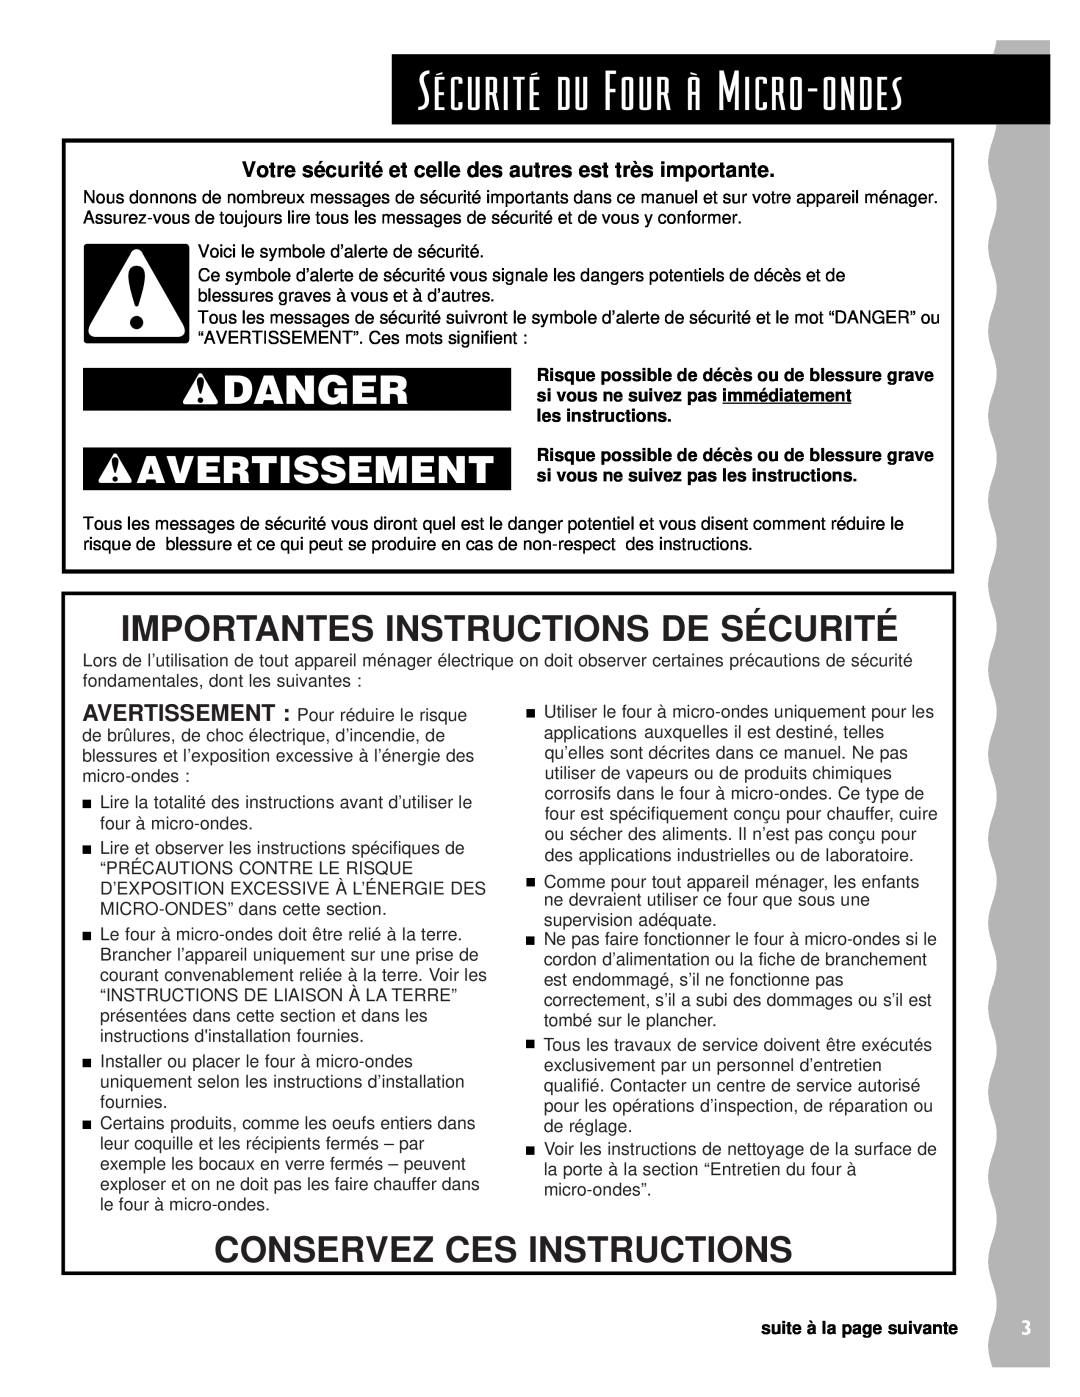 Whirlpool YKHMS145J warranty SŽcuritŽ du Four ˆ Micro-ondes, Avertissement, Importantes Instructions De Sécurité, Danger 